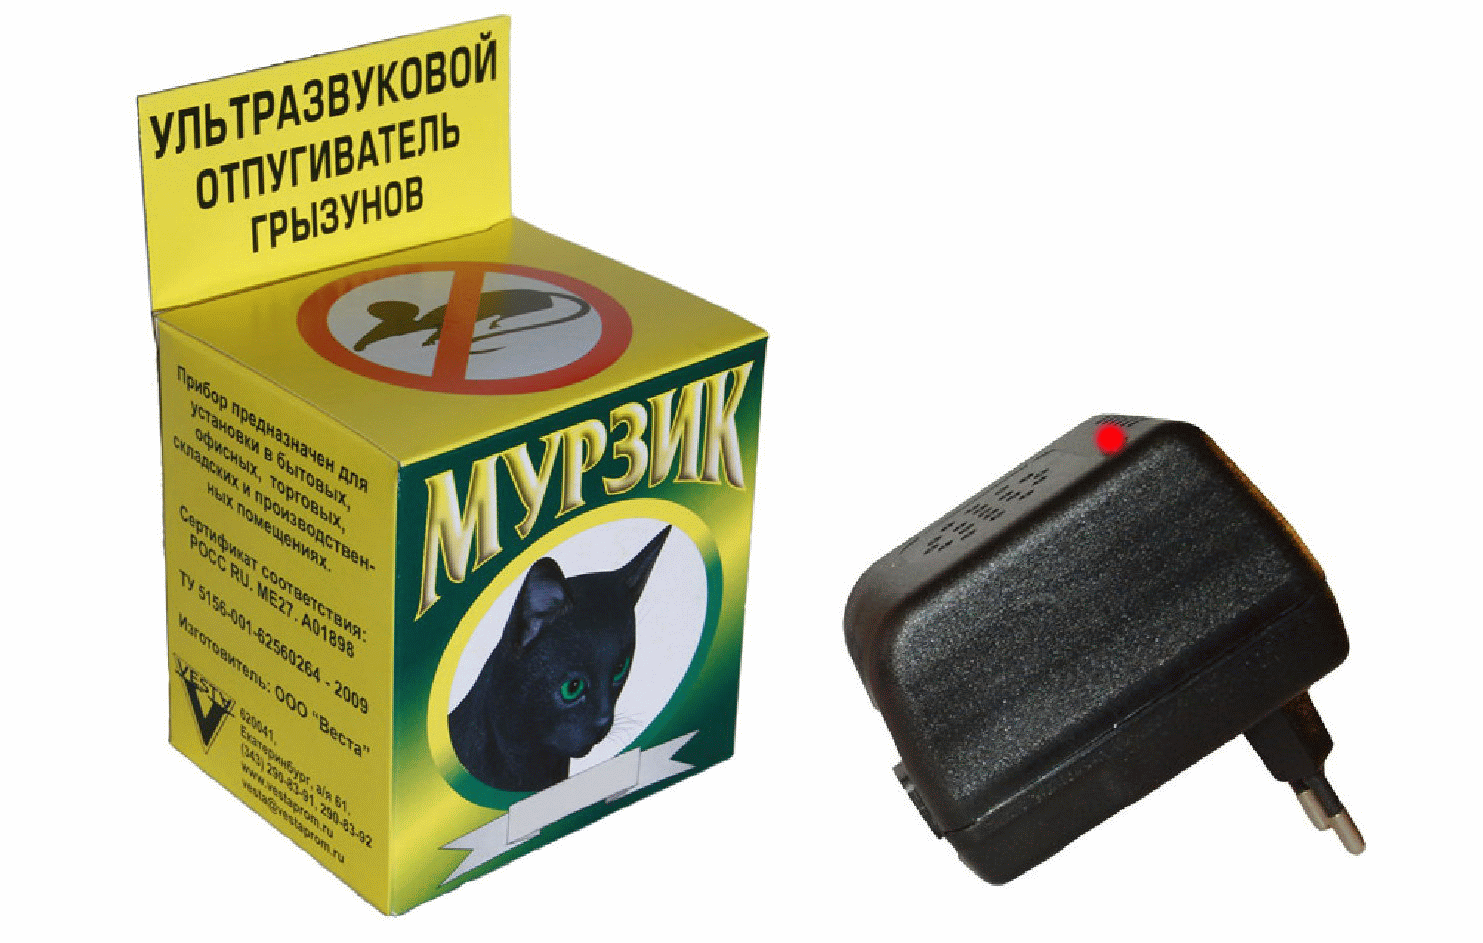 Ультразвуковой прибор Мурзик - эффективный прибор для защиты Вашего помещения от всех видов грызунов